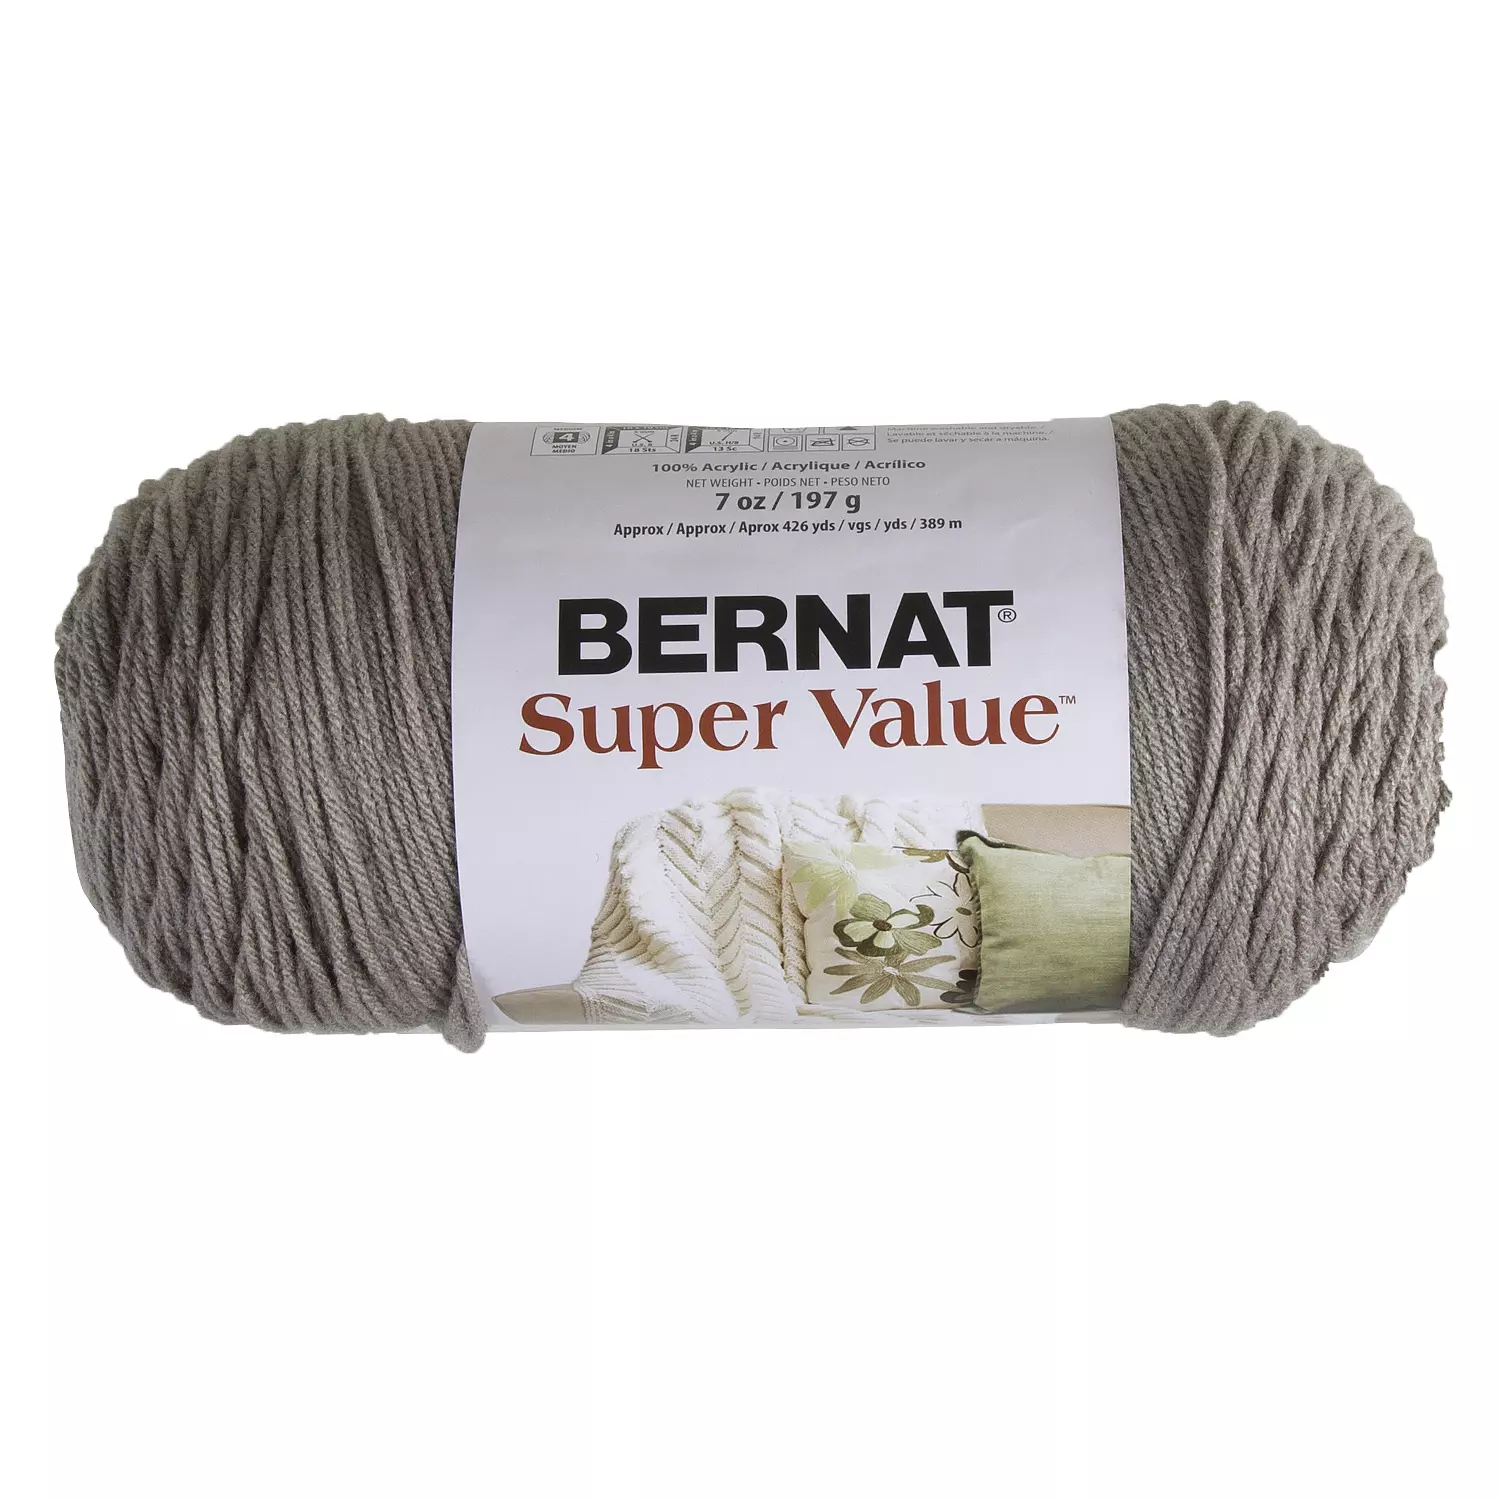 Bernat Super Value - Laine acrylique, argile